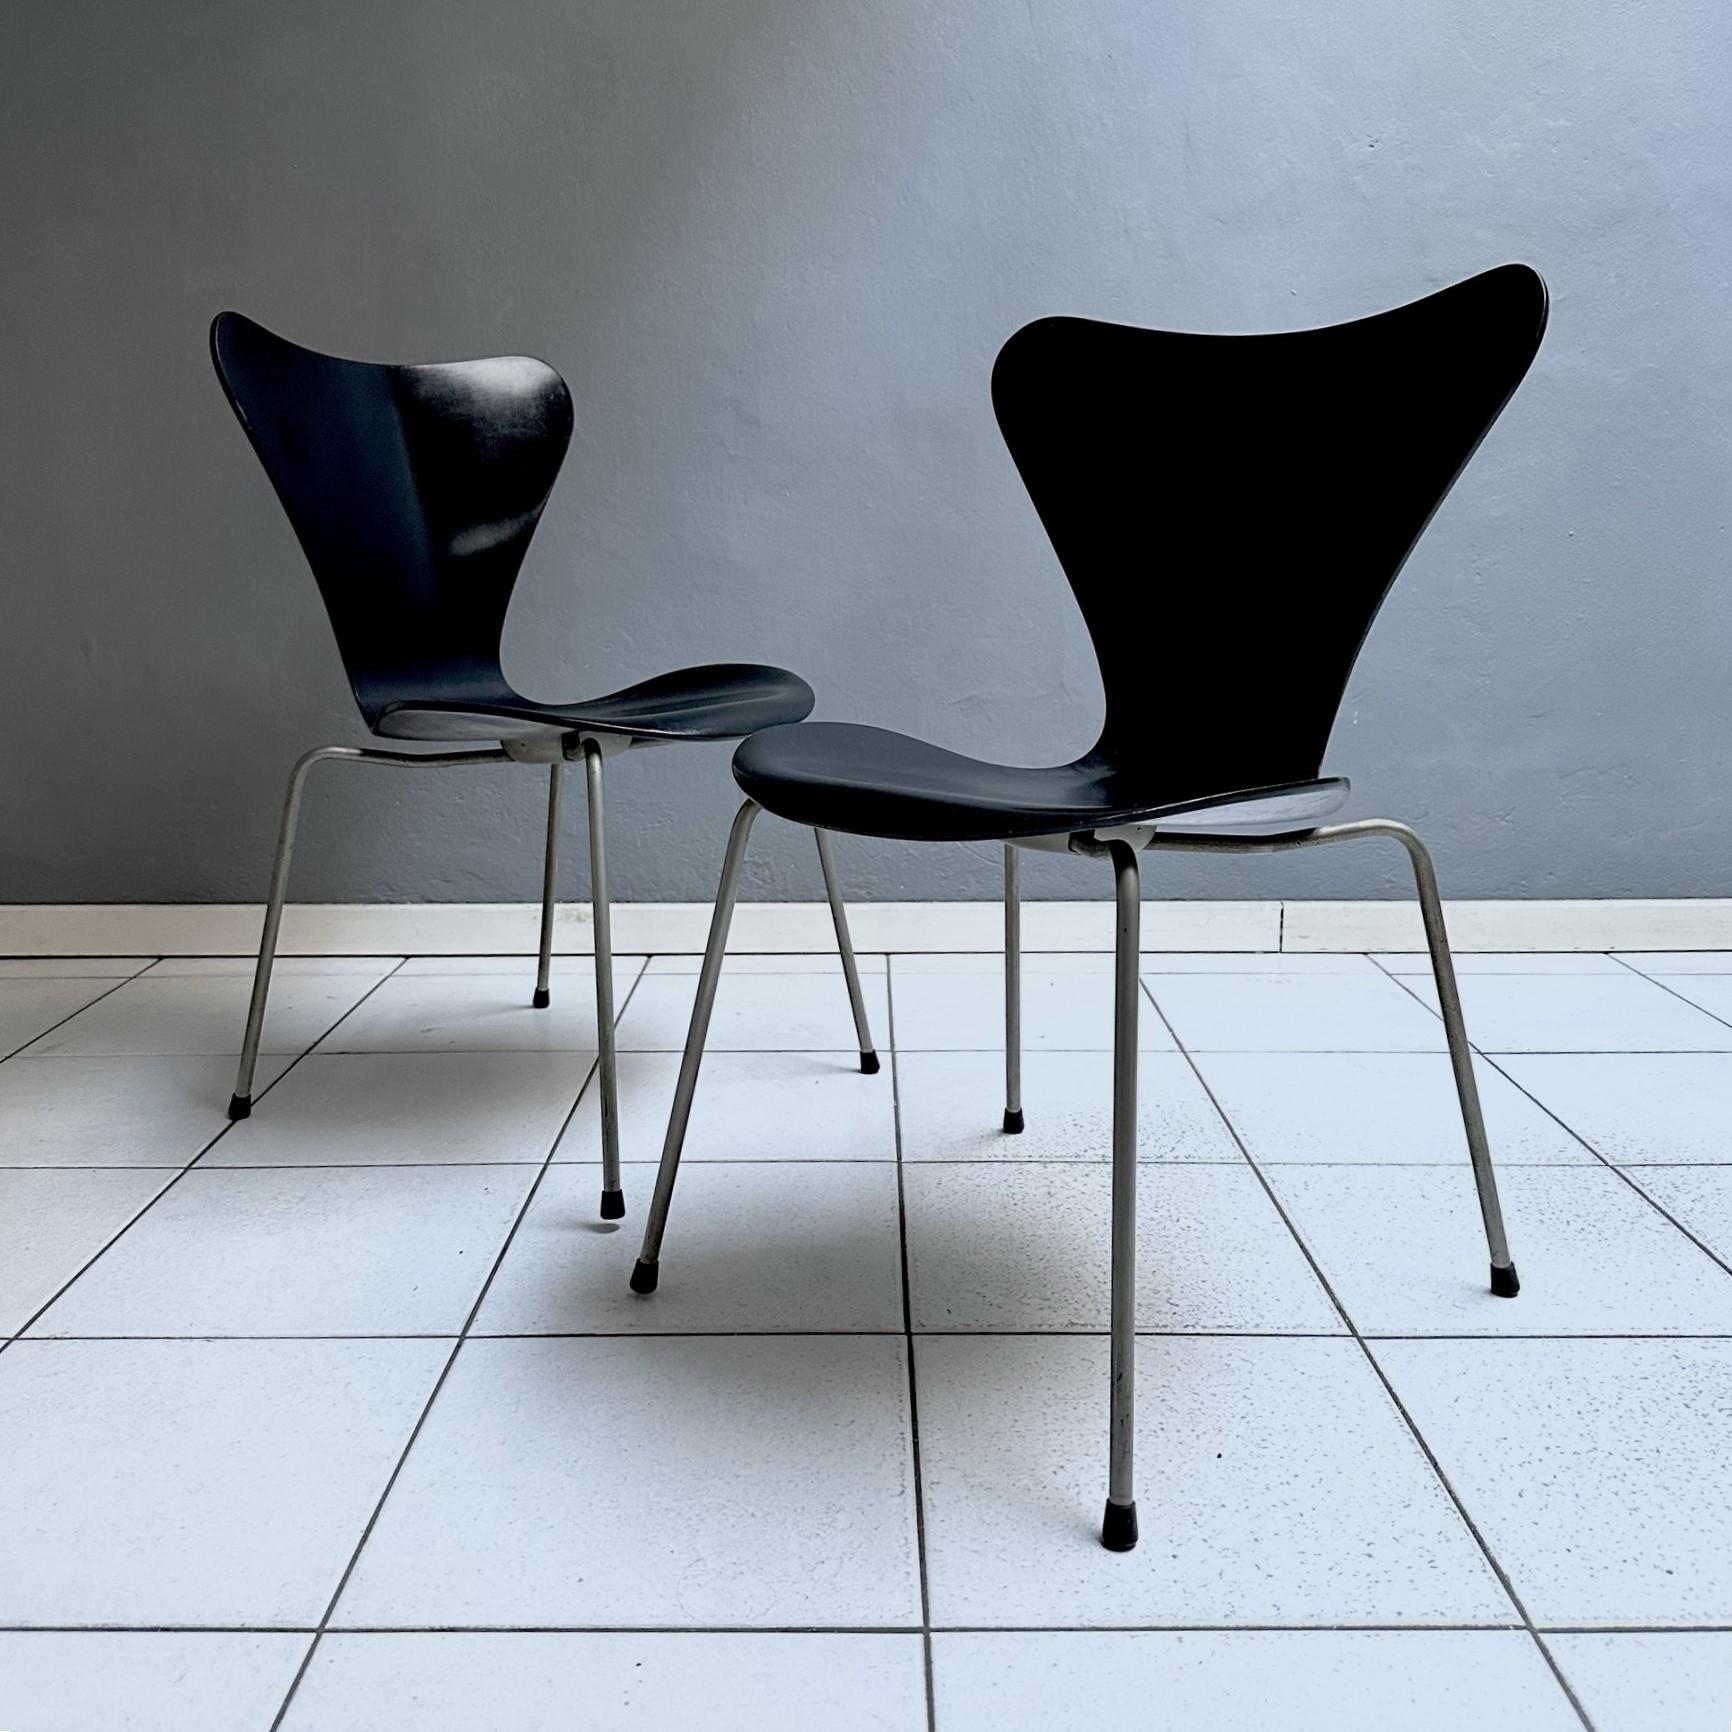 Paar Stühle Mod. 3107, entworfen von Arne Jacobsen für den dänischen Möbelhersteller Fritz Hansen im Jahr 1973.
Die schwarz lackierte Sitzschale besteht aus Sperrholz, die Struktur aus verchromtem Metall.
Das Echtheitszeichen ist unter dem Sitz